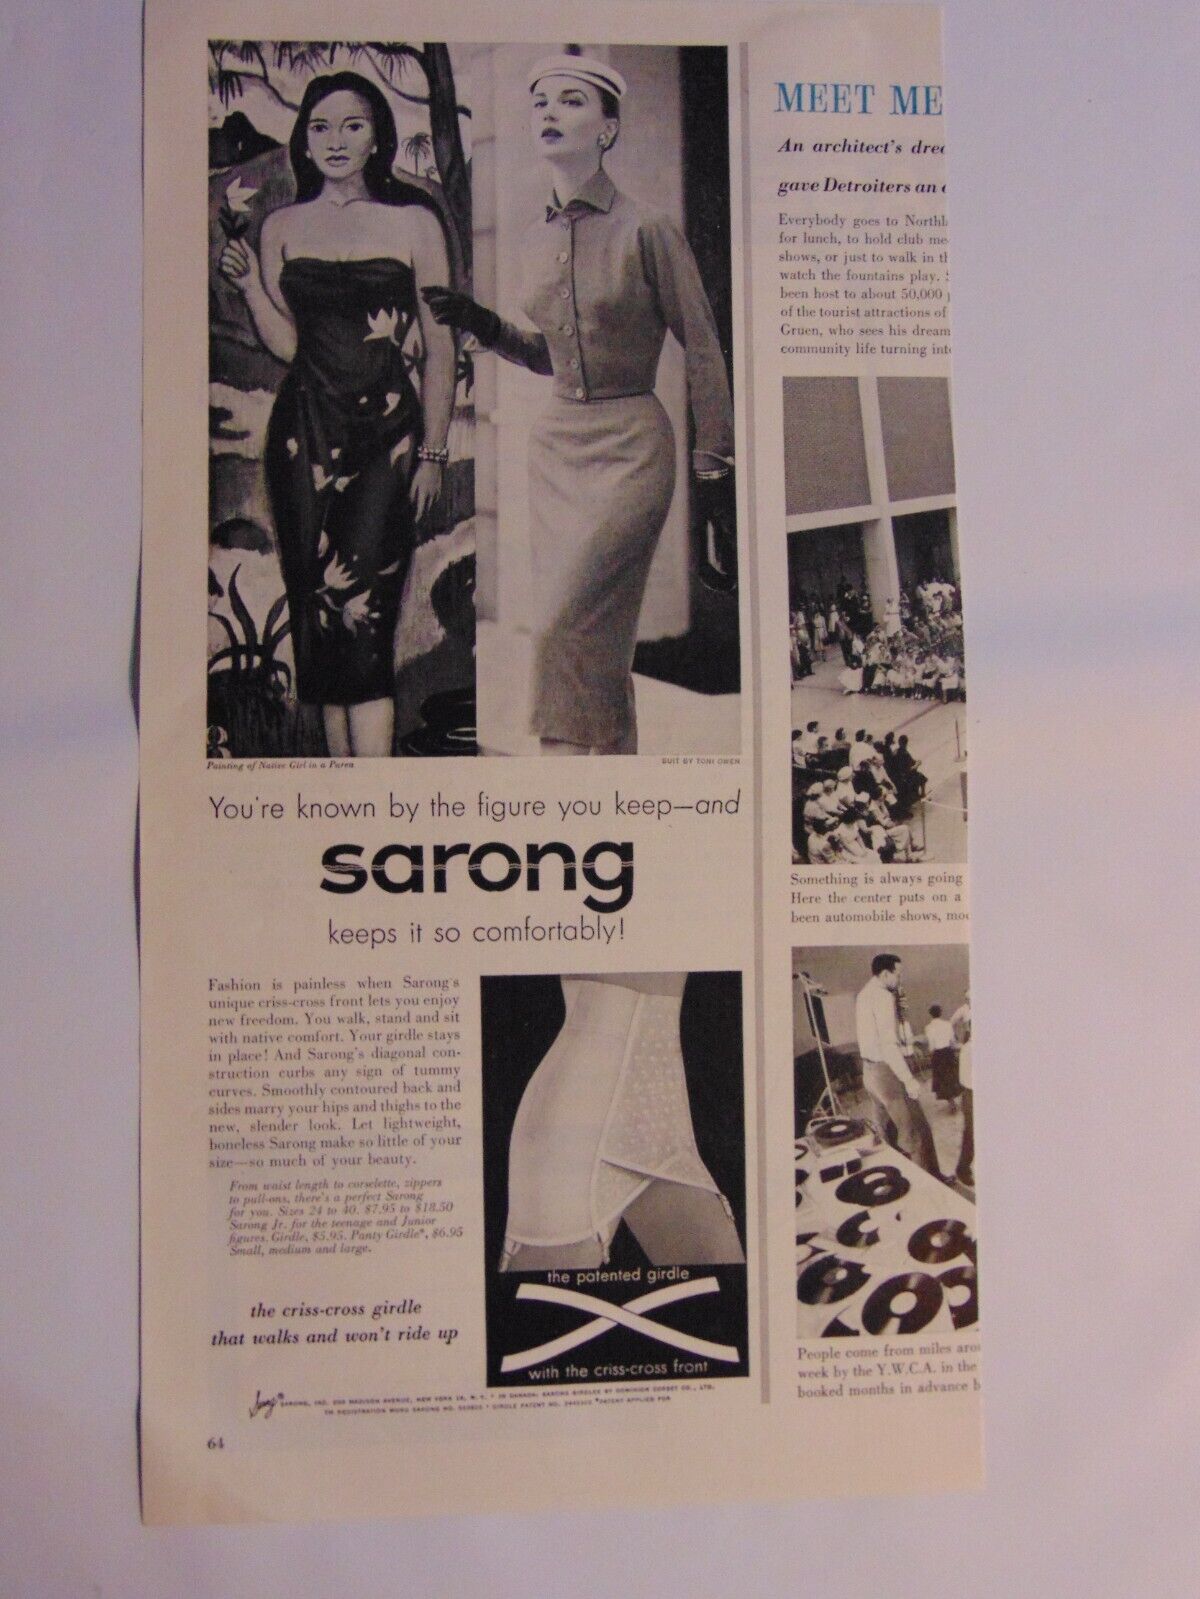 1955 Sarong Criss-Cross Girdle vintage print ad